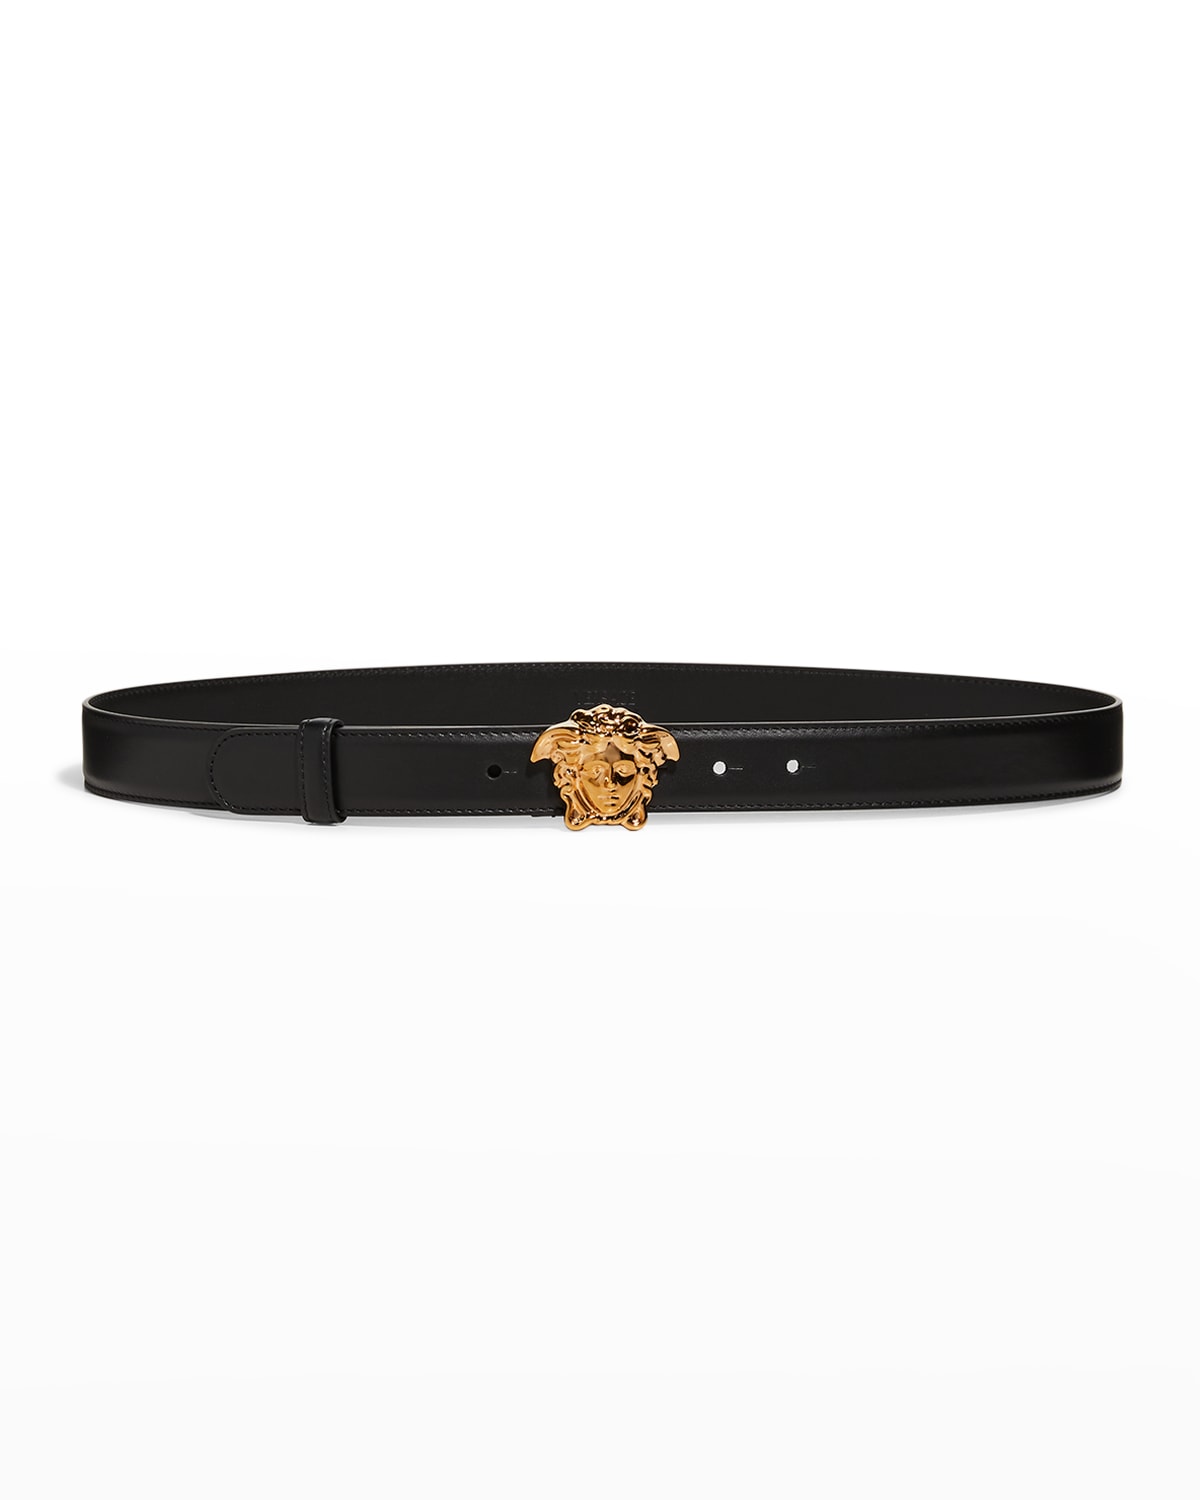 Versace La Medusa 20mm Leather Belt, Black In Black / Gold